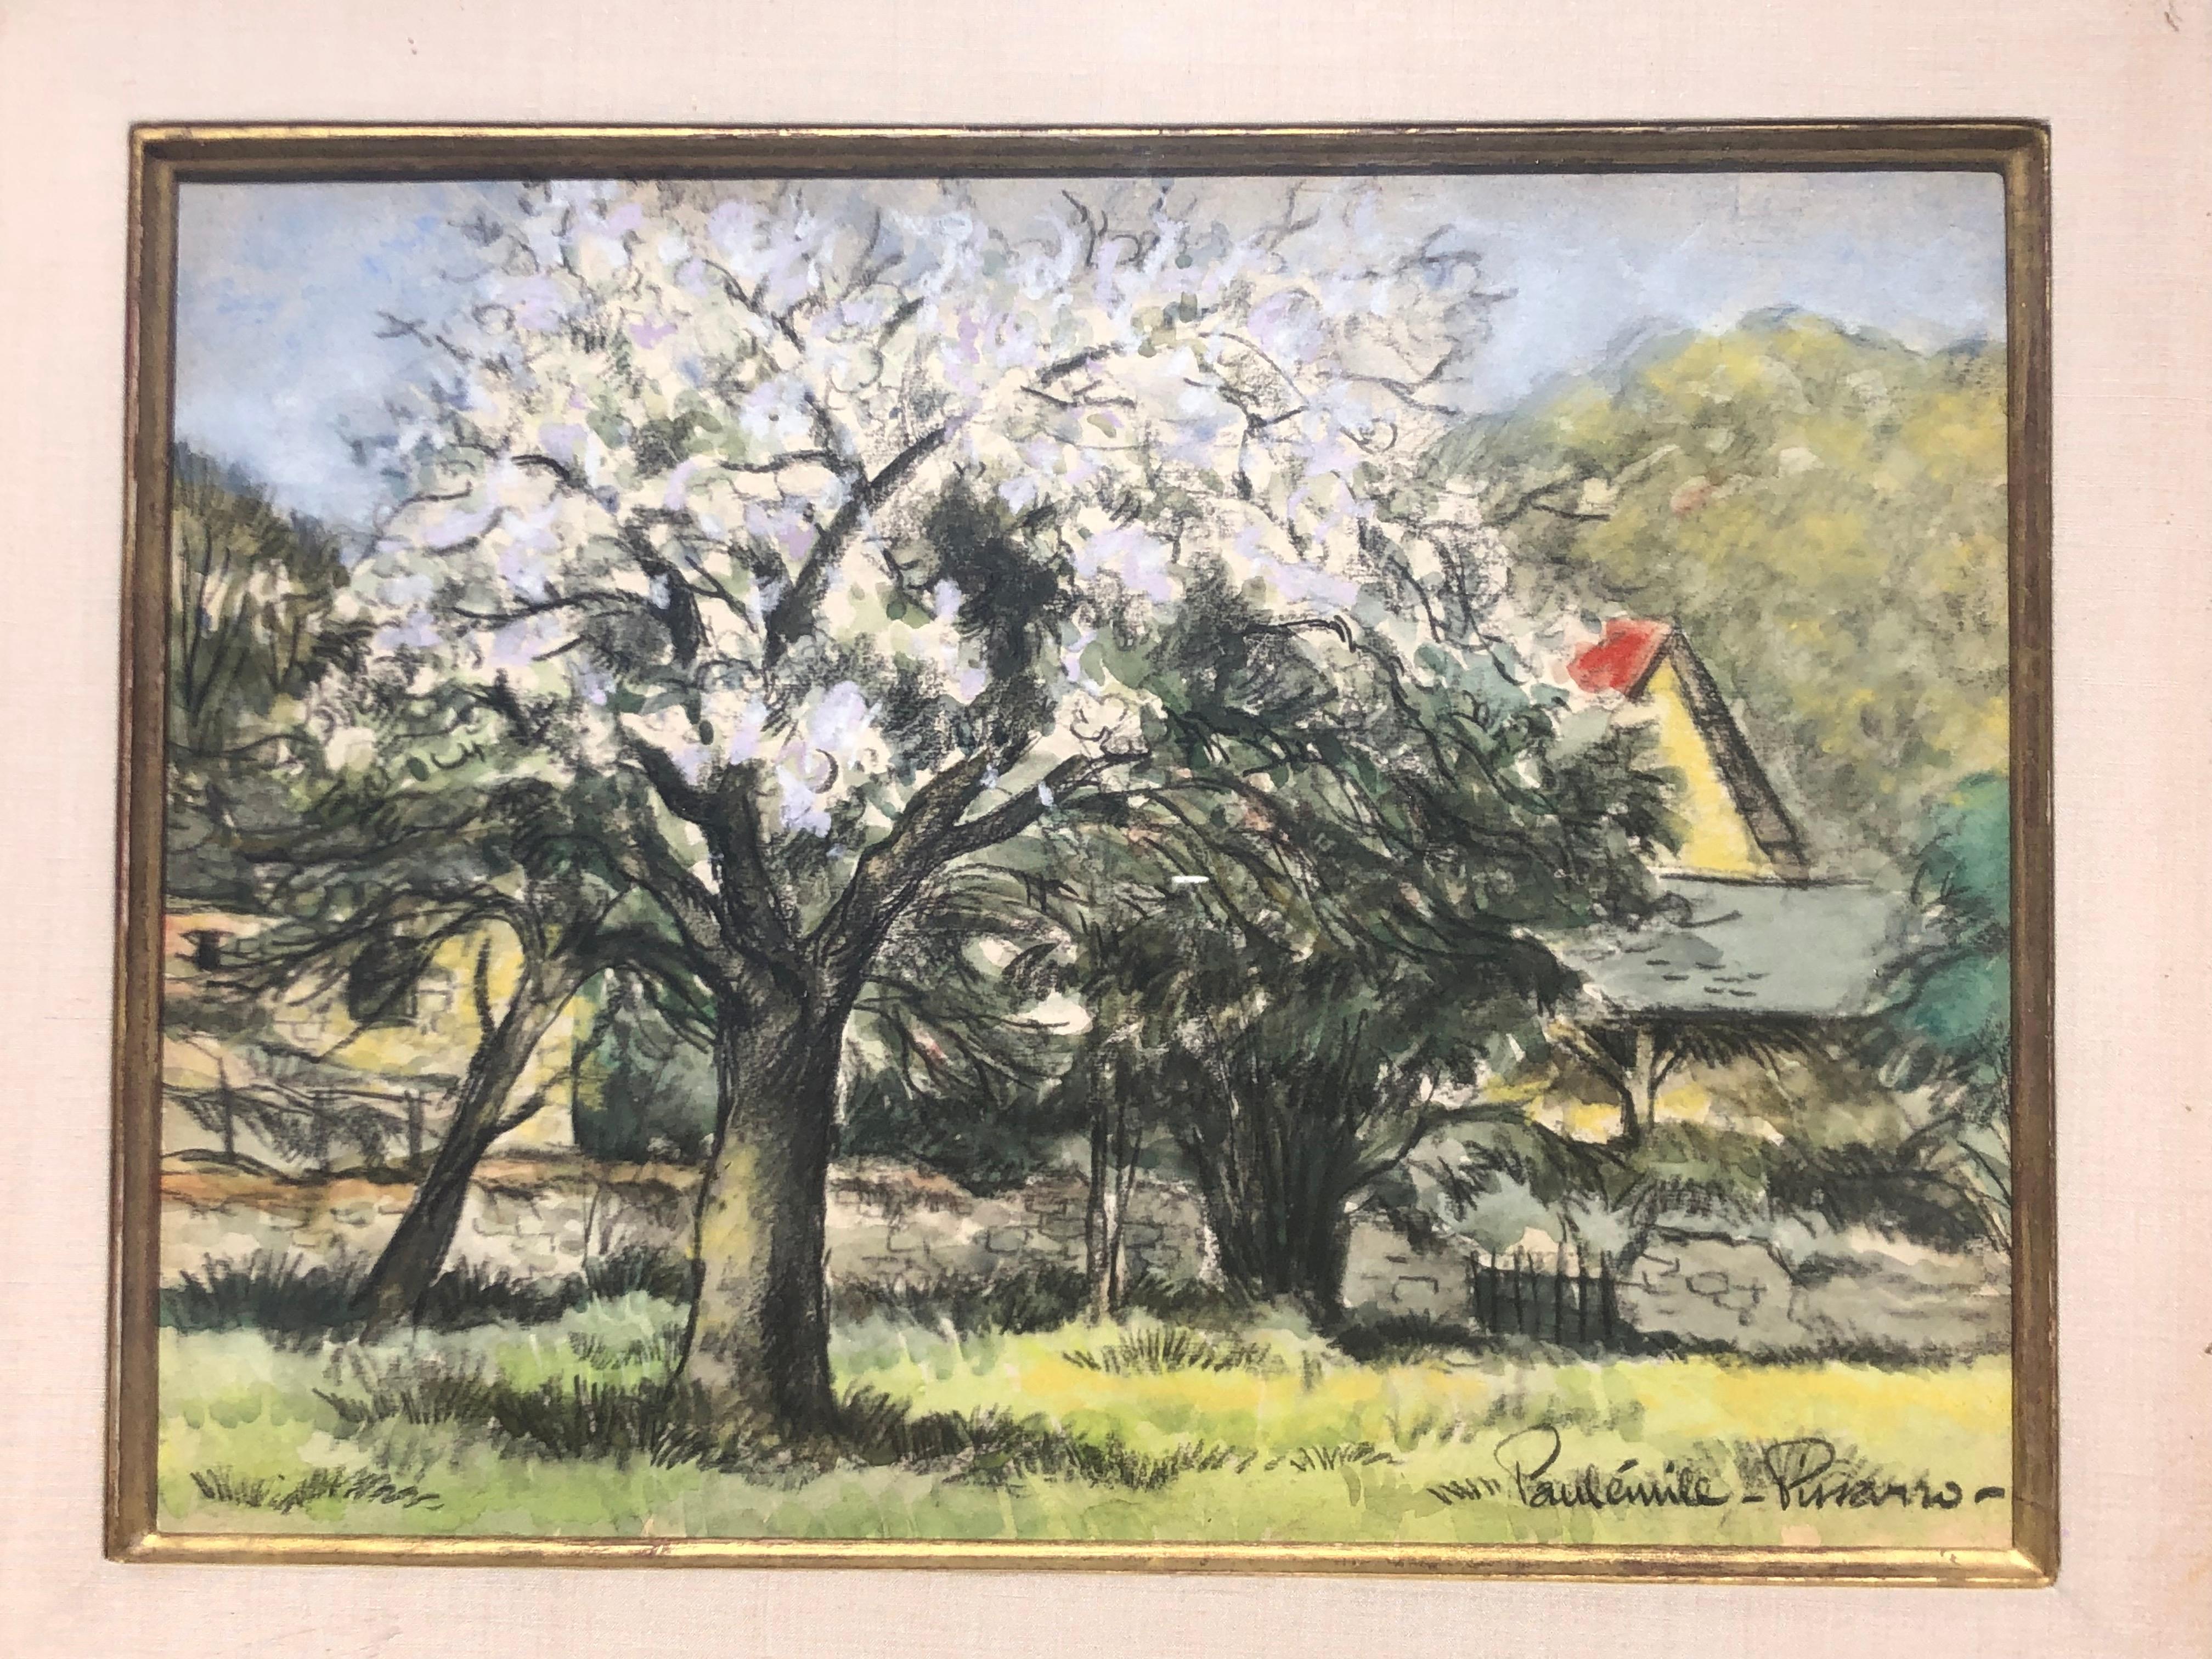   Treis en fleurs impressionniste français - Painting de Paul Emile Pissarro